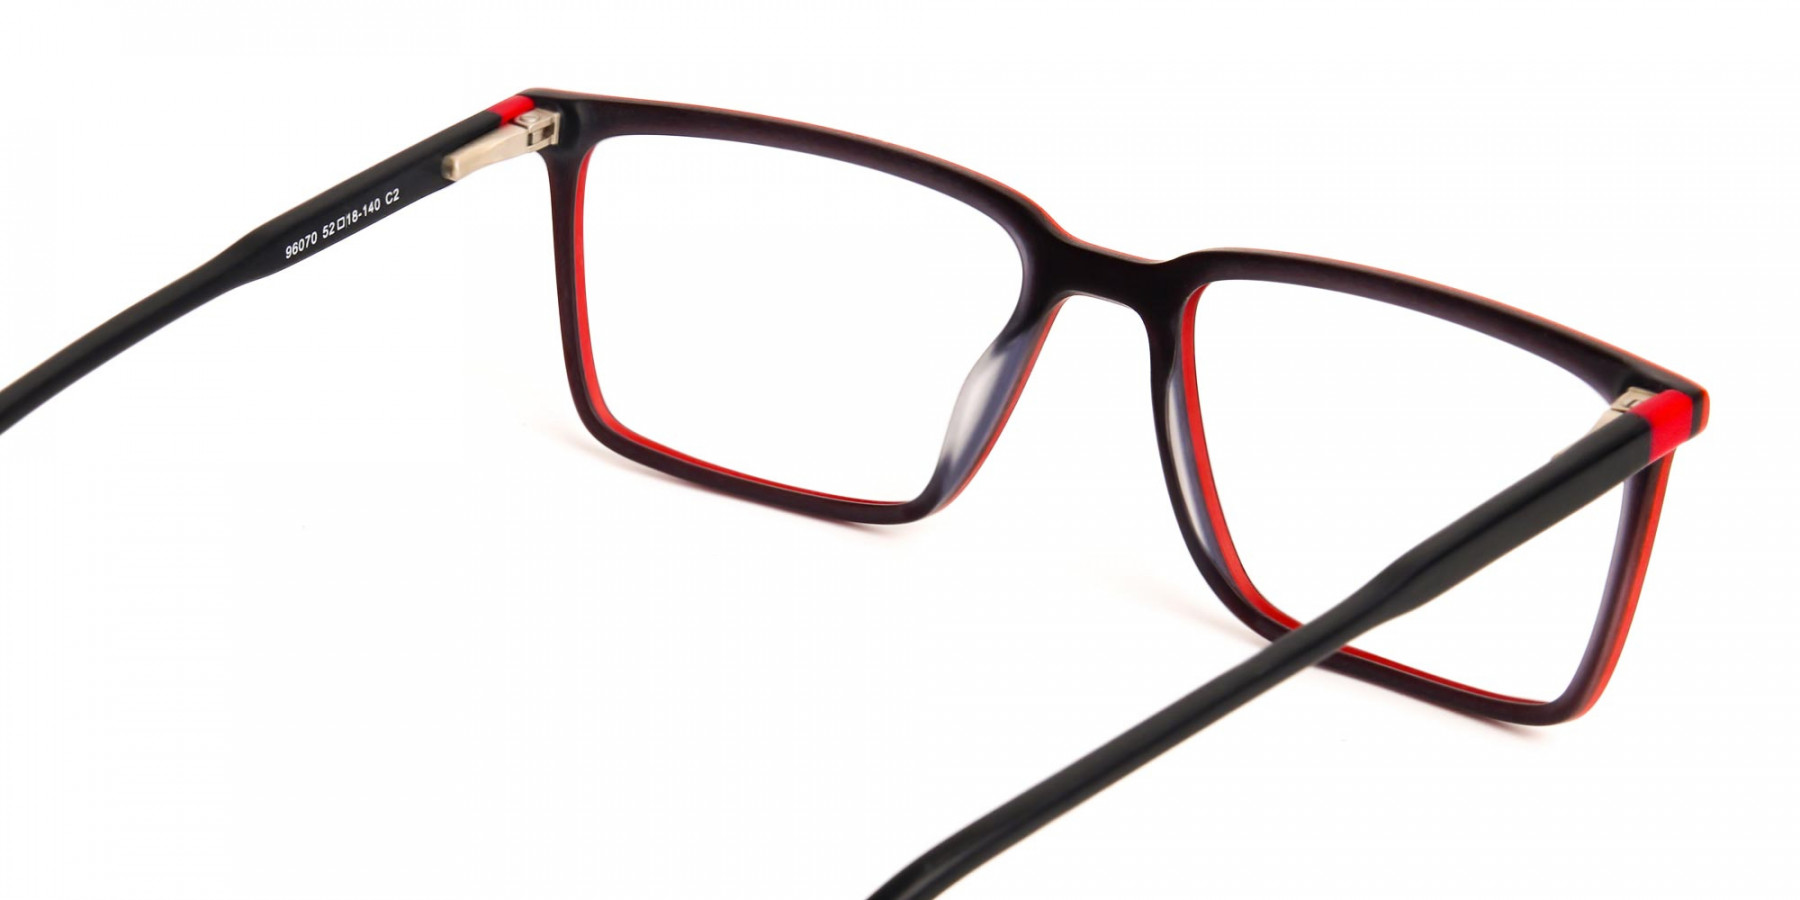 black-and-red-rectangular-glasses-frames-1